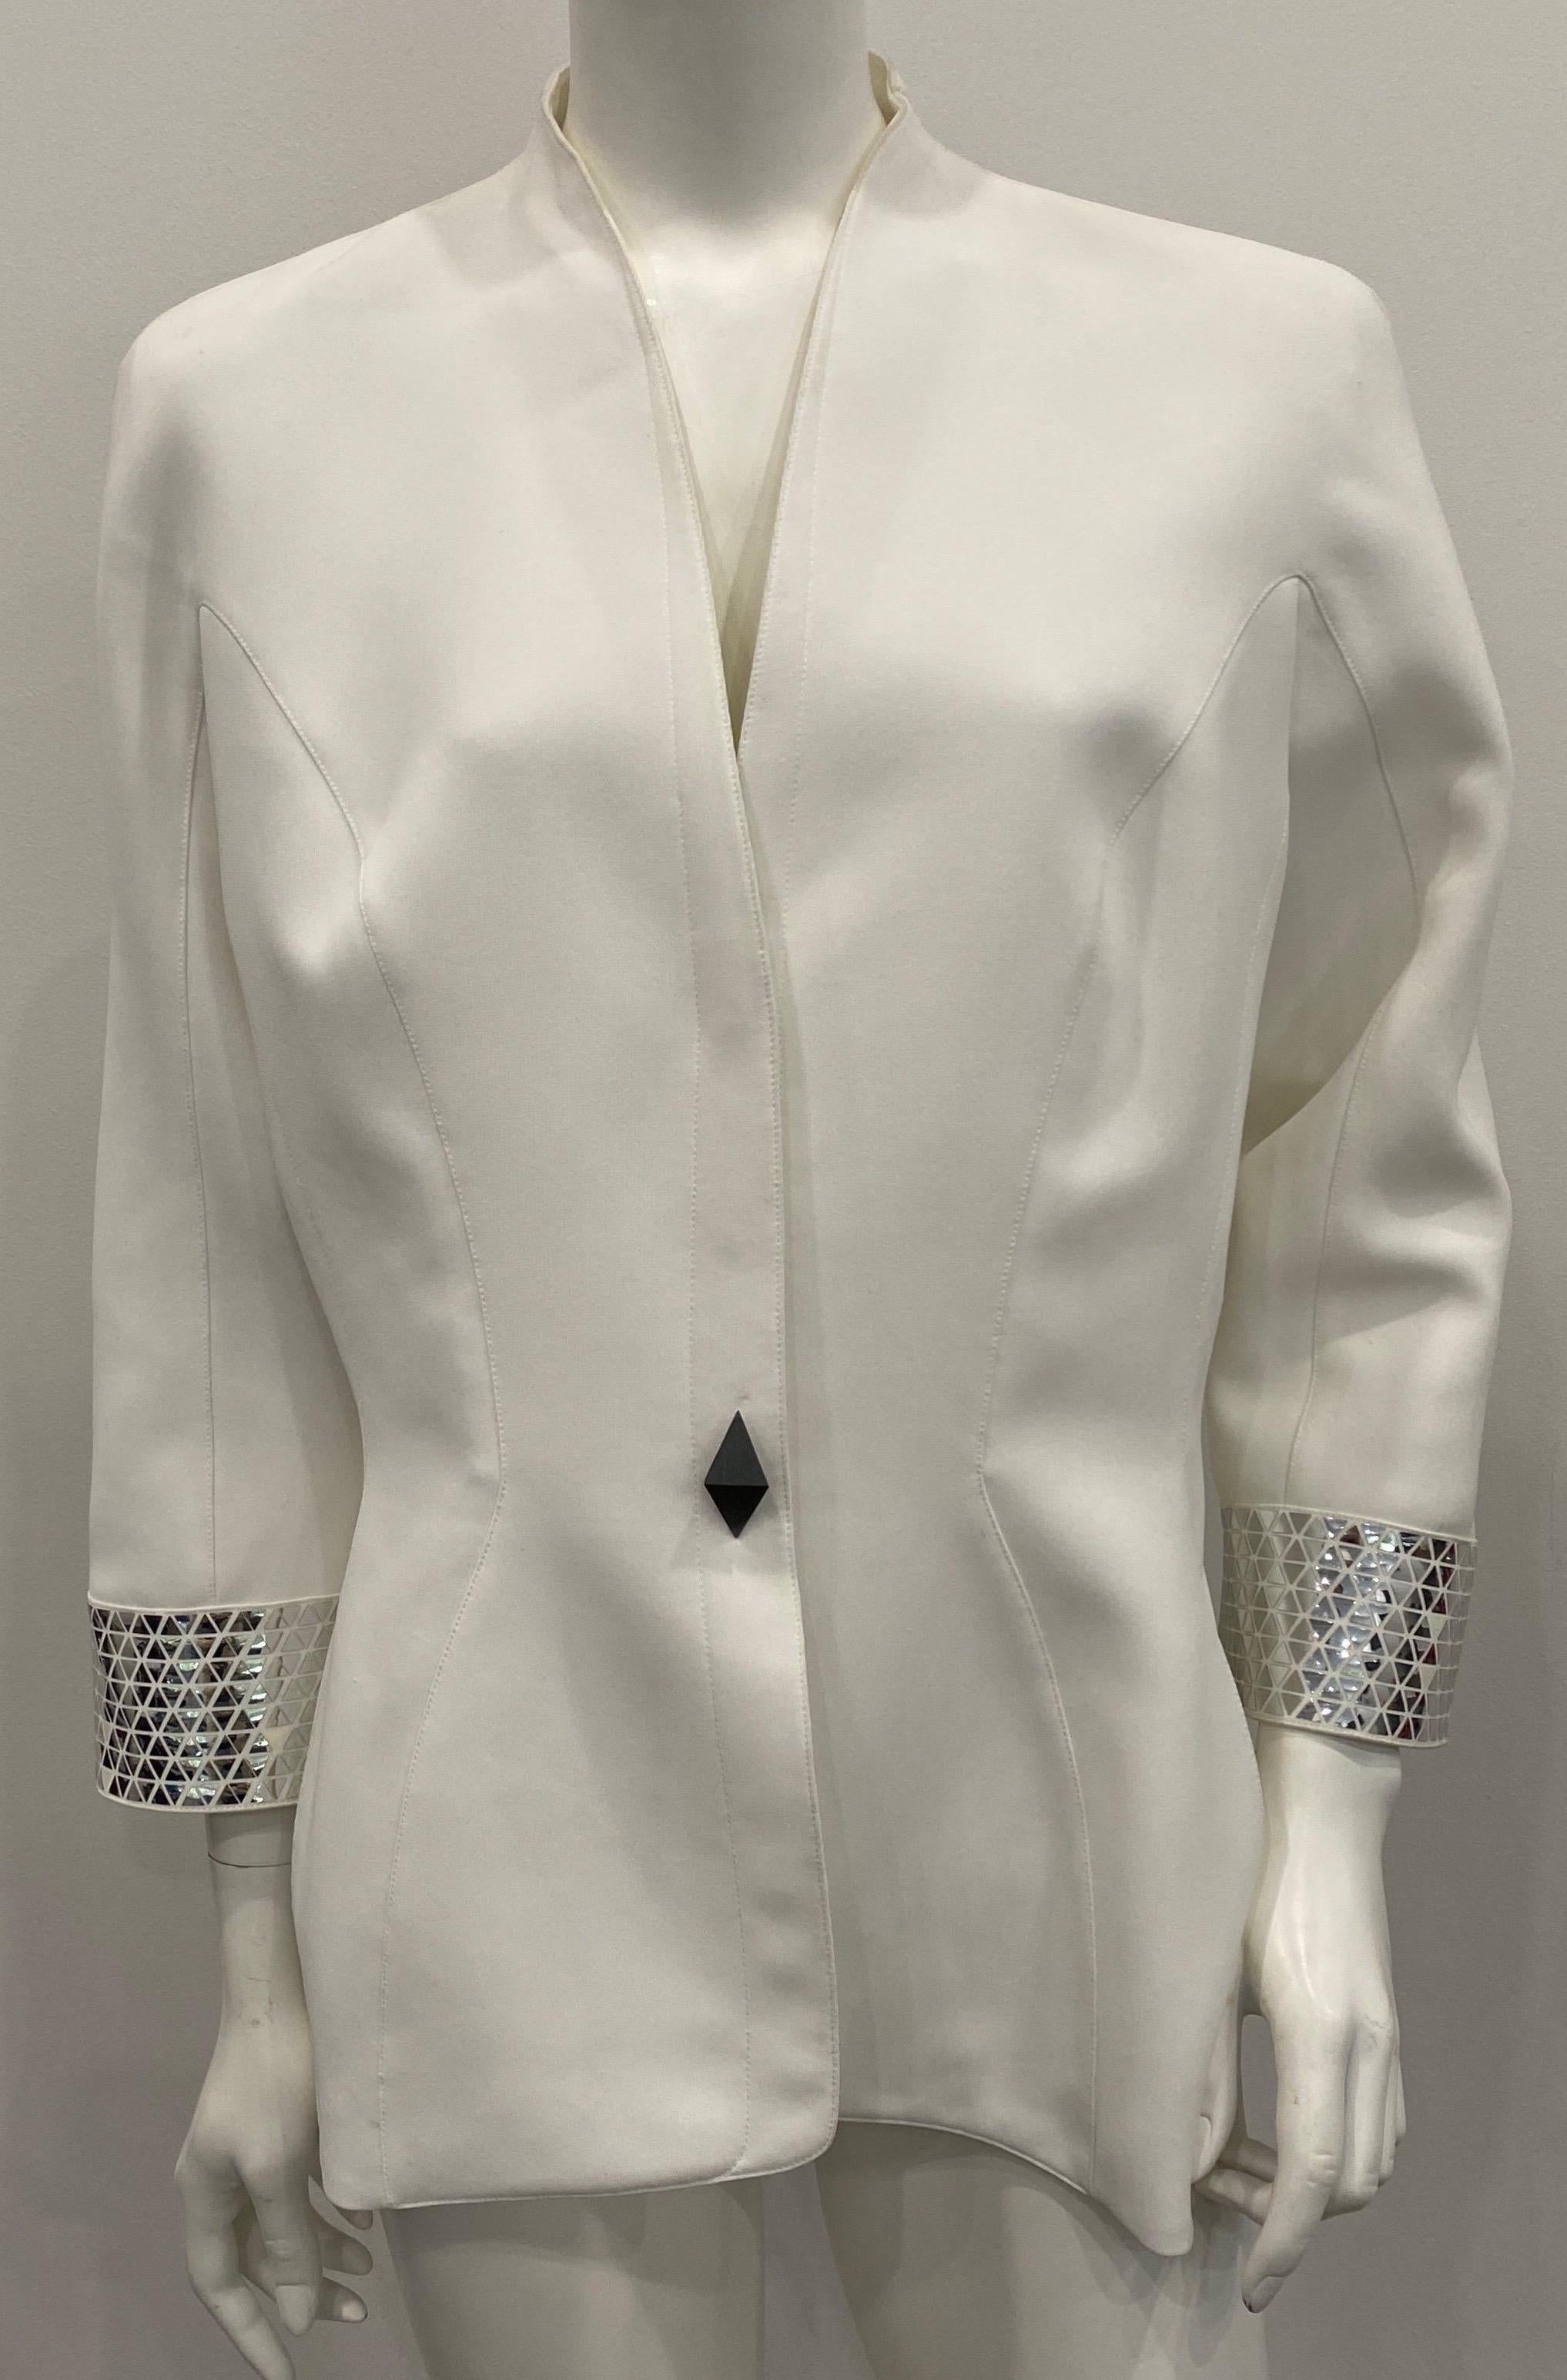 Thierry Mugler Couture 1990 Veste en polyester blanc avec détails métalliques argentés - Taille 46  Ce superbe vêtement vintage Mugler Couture entièrement doublé est doté d'une seule poitrine, d'un bouton argenté décoratif et de trois